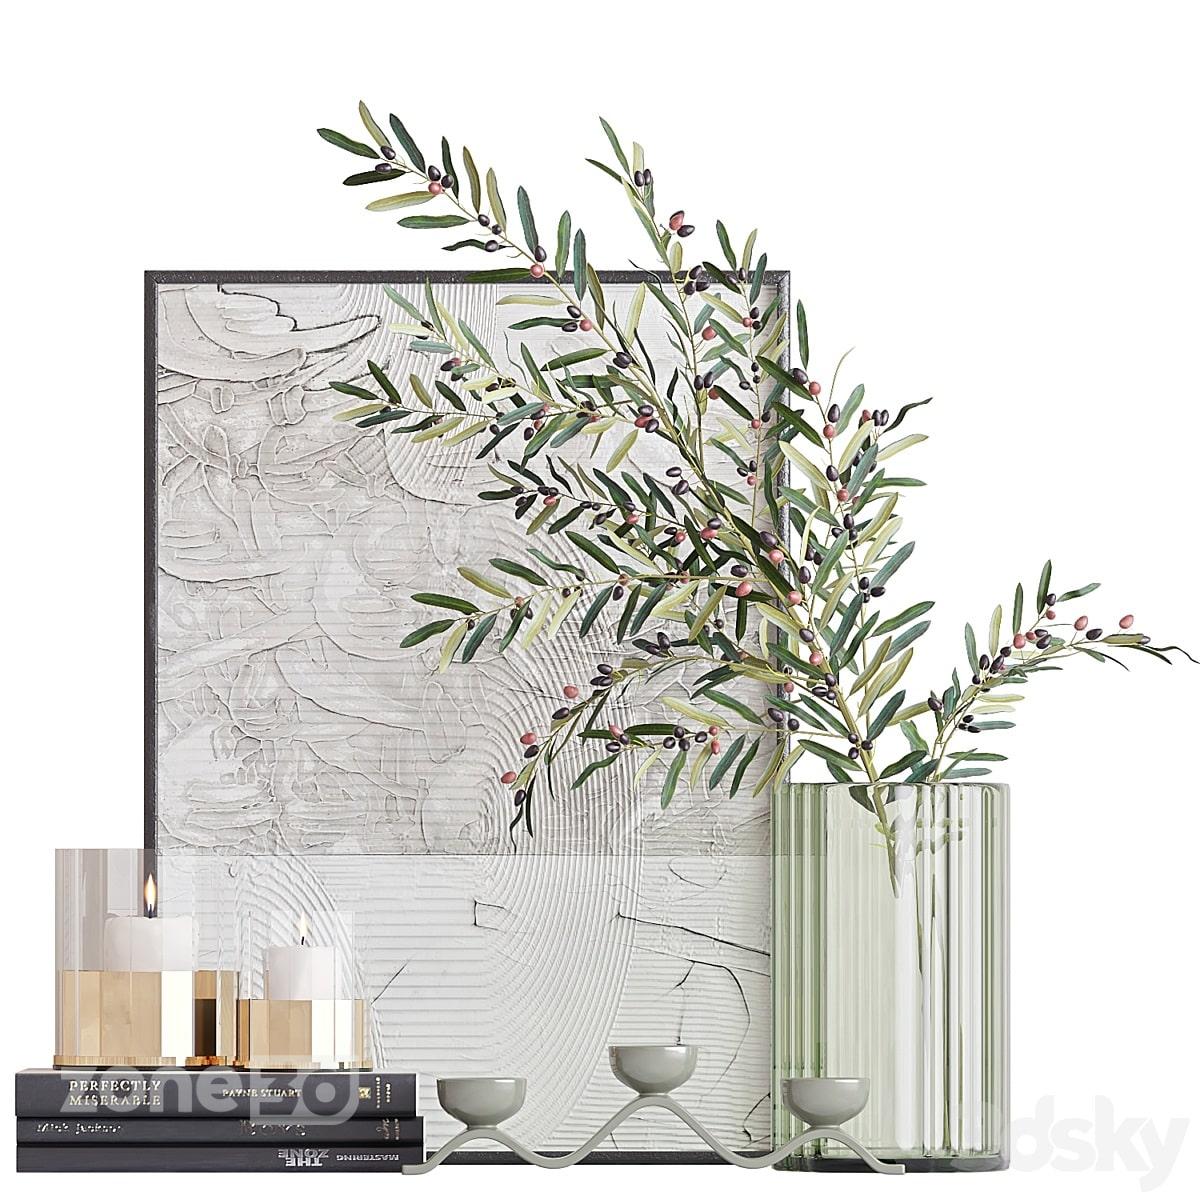 آبجکت ست دکوری مدرن شیشه ای و فلزی به همراه گلدان با گیاه